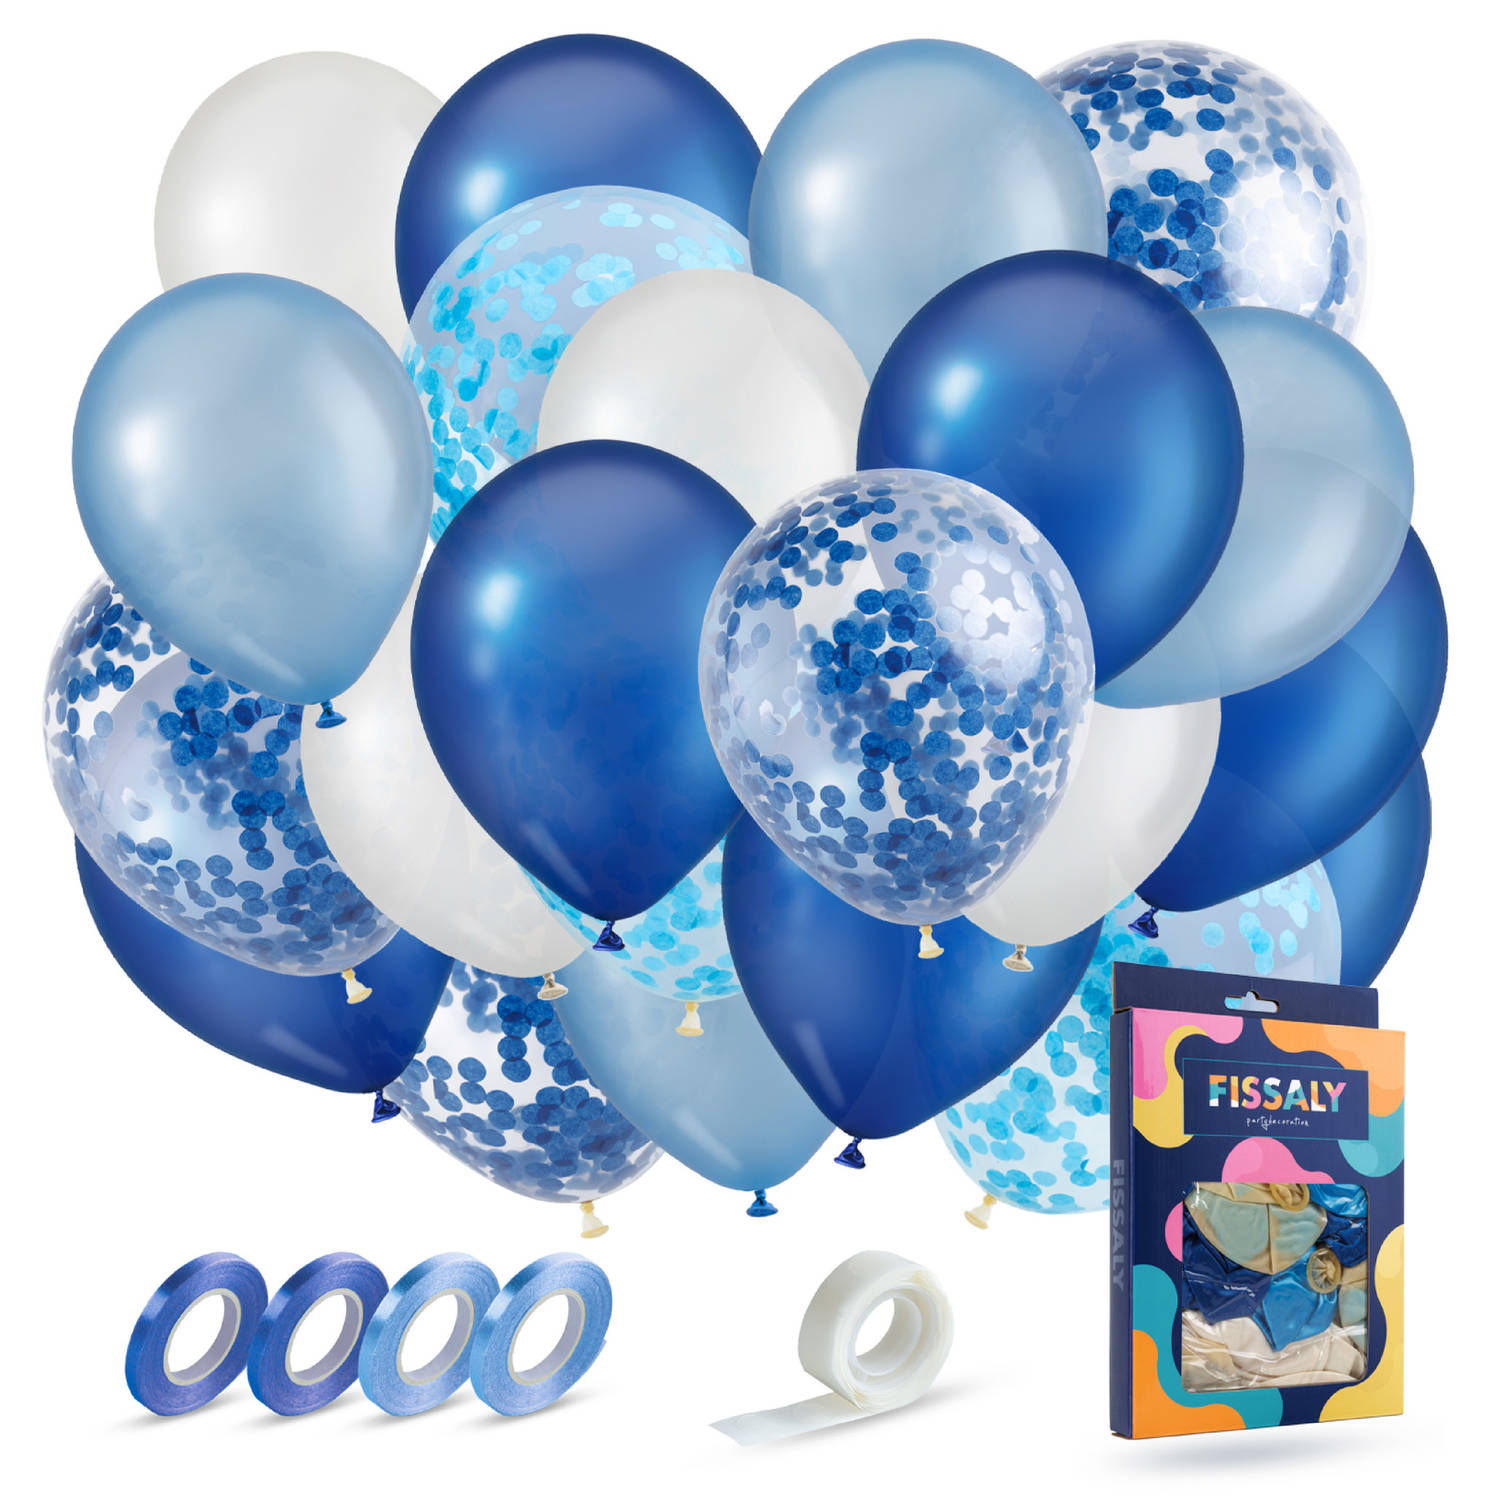 Fissaly® 40 stuks Blauw, Wit & Donkerblauw Helium Ballonnen met Lint - Versiering Decoratie - Papieren Confetti - Latex